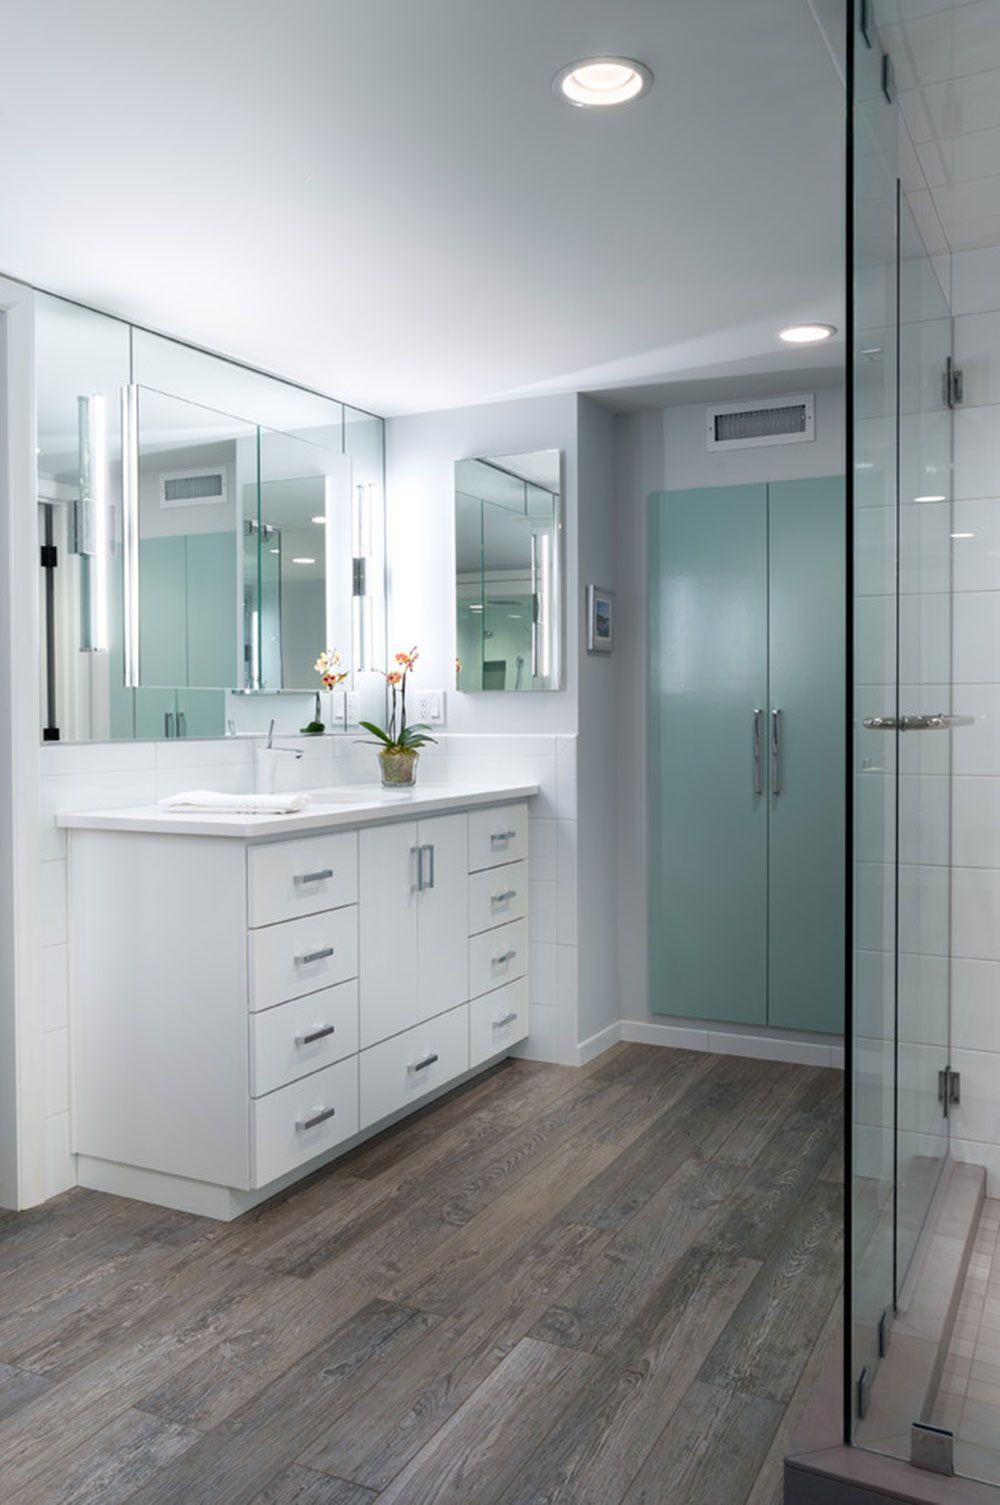 Wood Look Tile Bathrooms
 Tips For Choosing Tile That Looks Like Wood